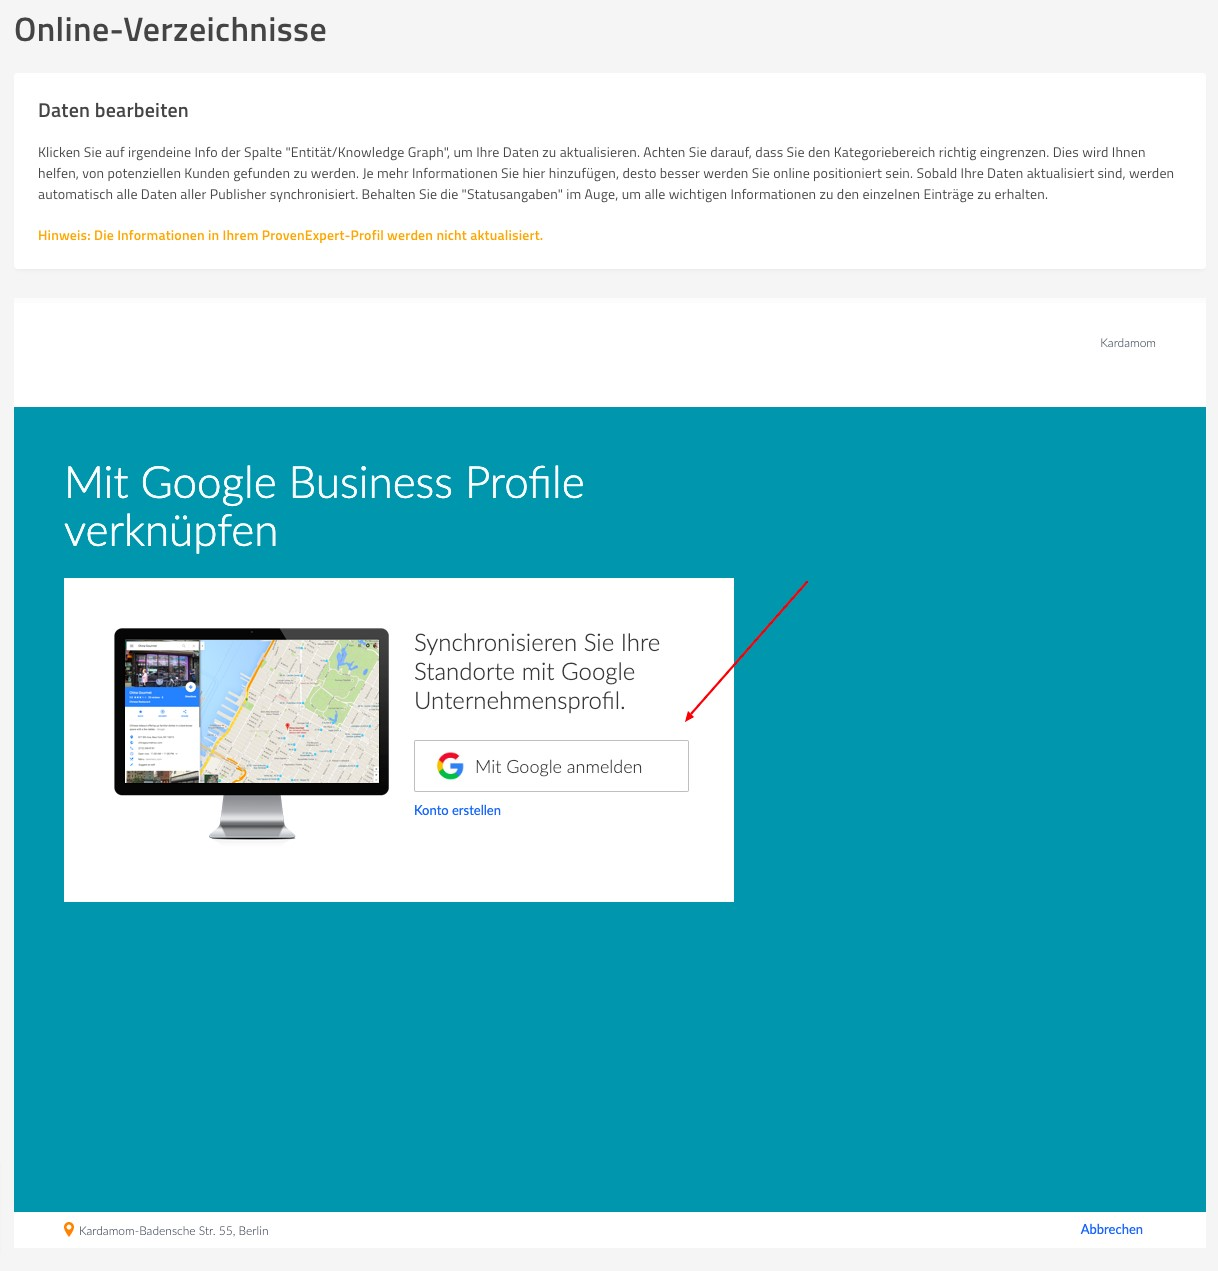 Fenster, um Google Business Profile zu verknüpfen